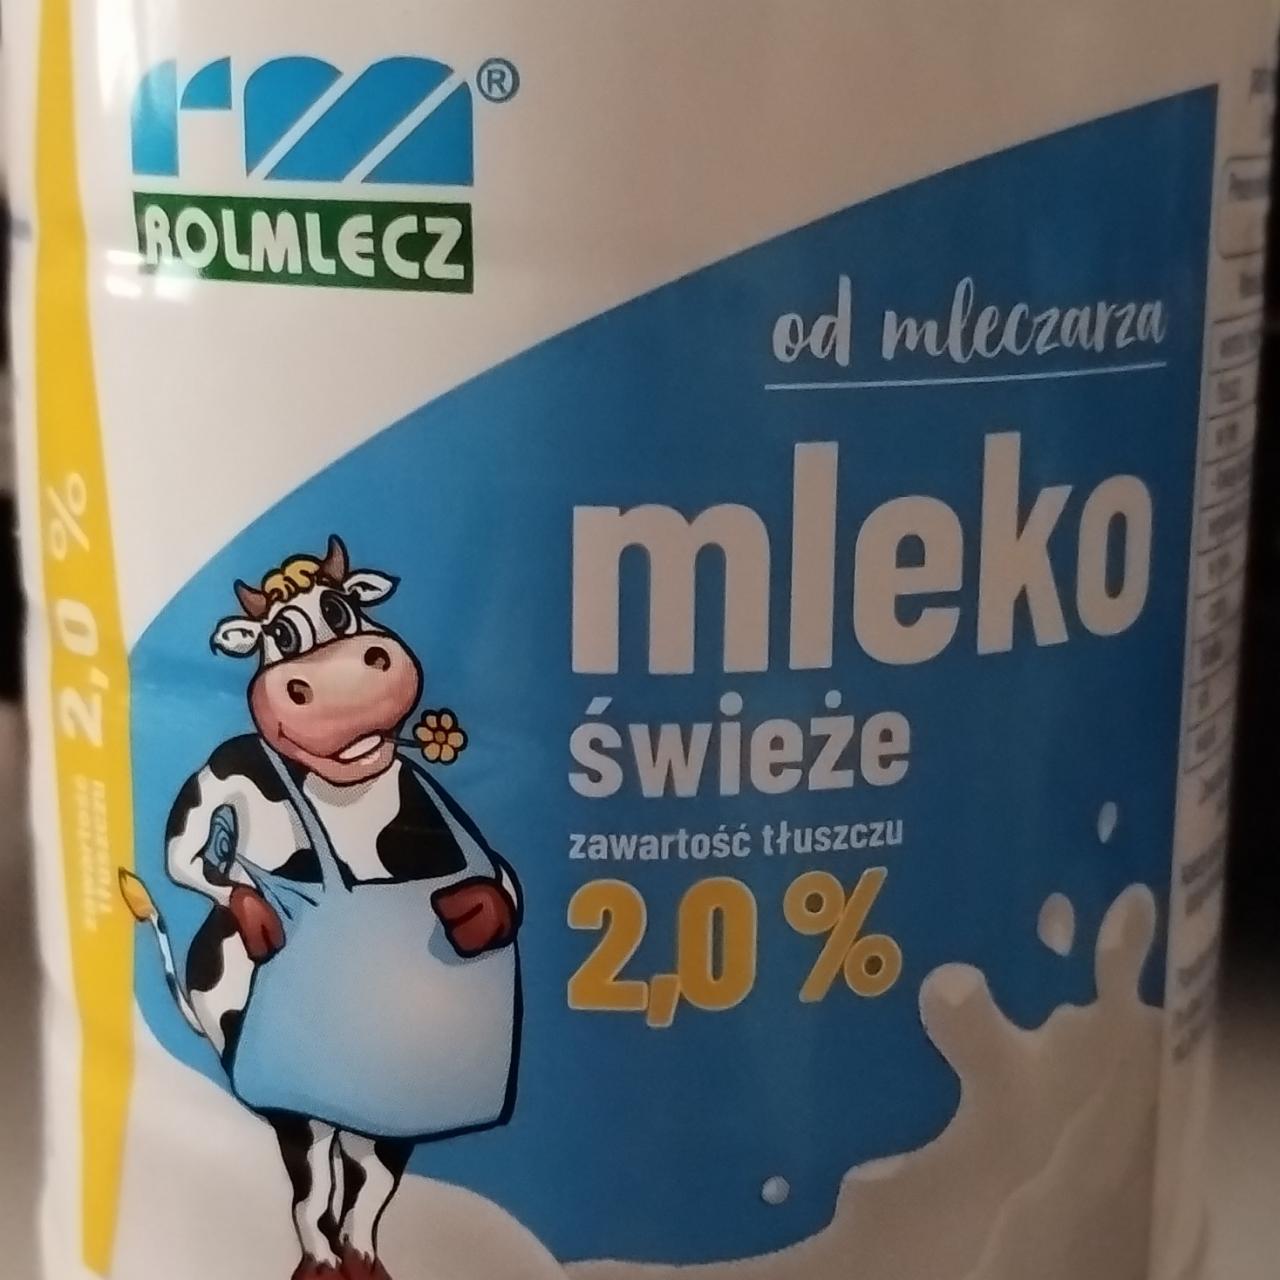 Zdjęcia - Mleko świeże 2,0% Rolmlecz